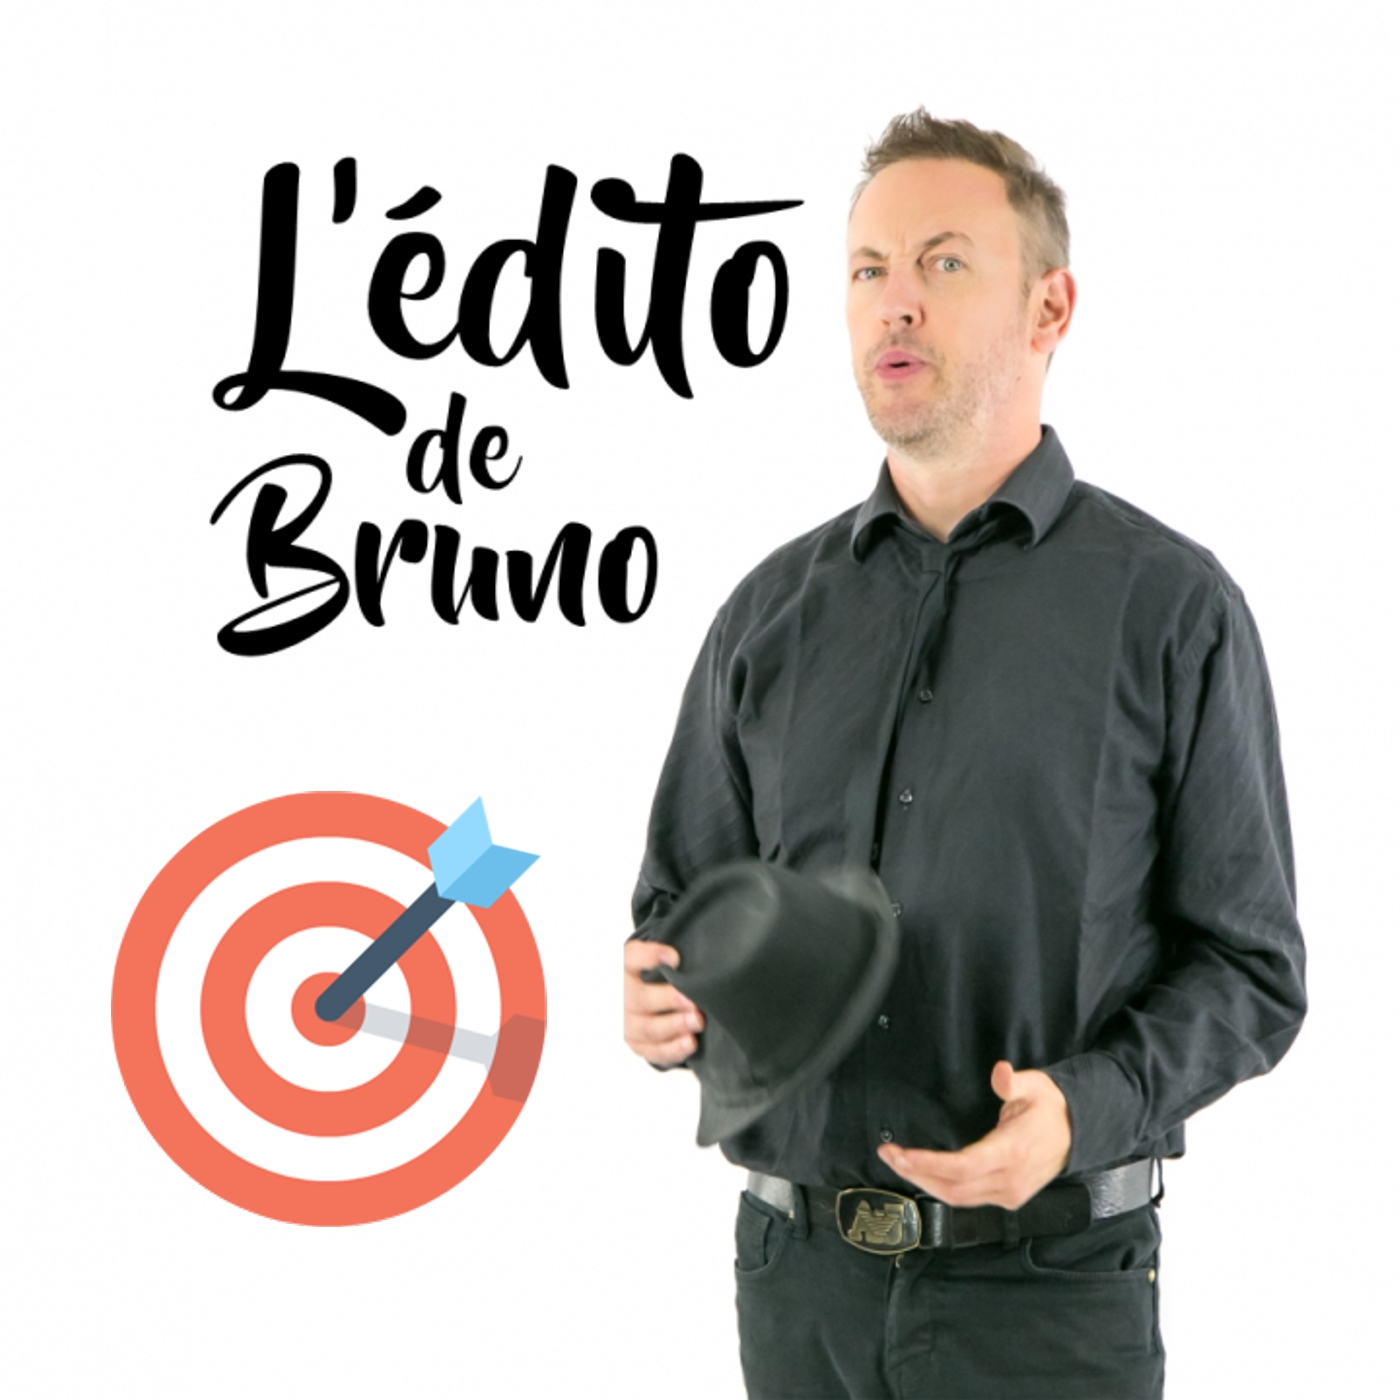 L'édito de Bruno du 12 11 2019 L'édito de Bruno de l'émission Tendance à m'plaire sur Radio G! L'édito de Bruno du 12 11 2019